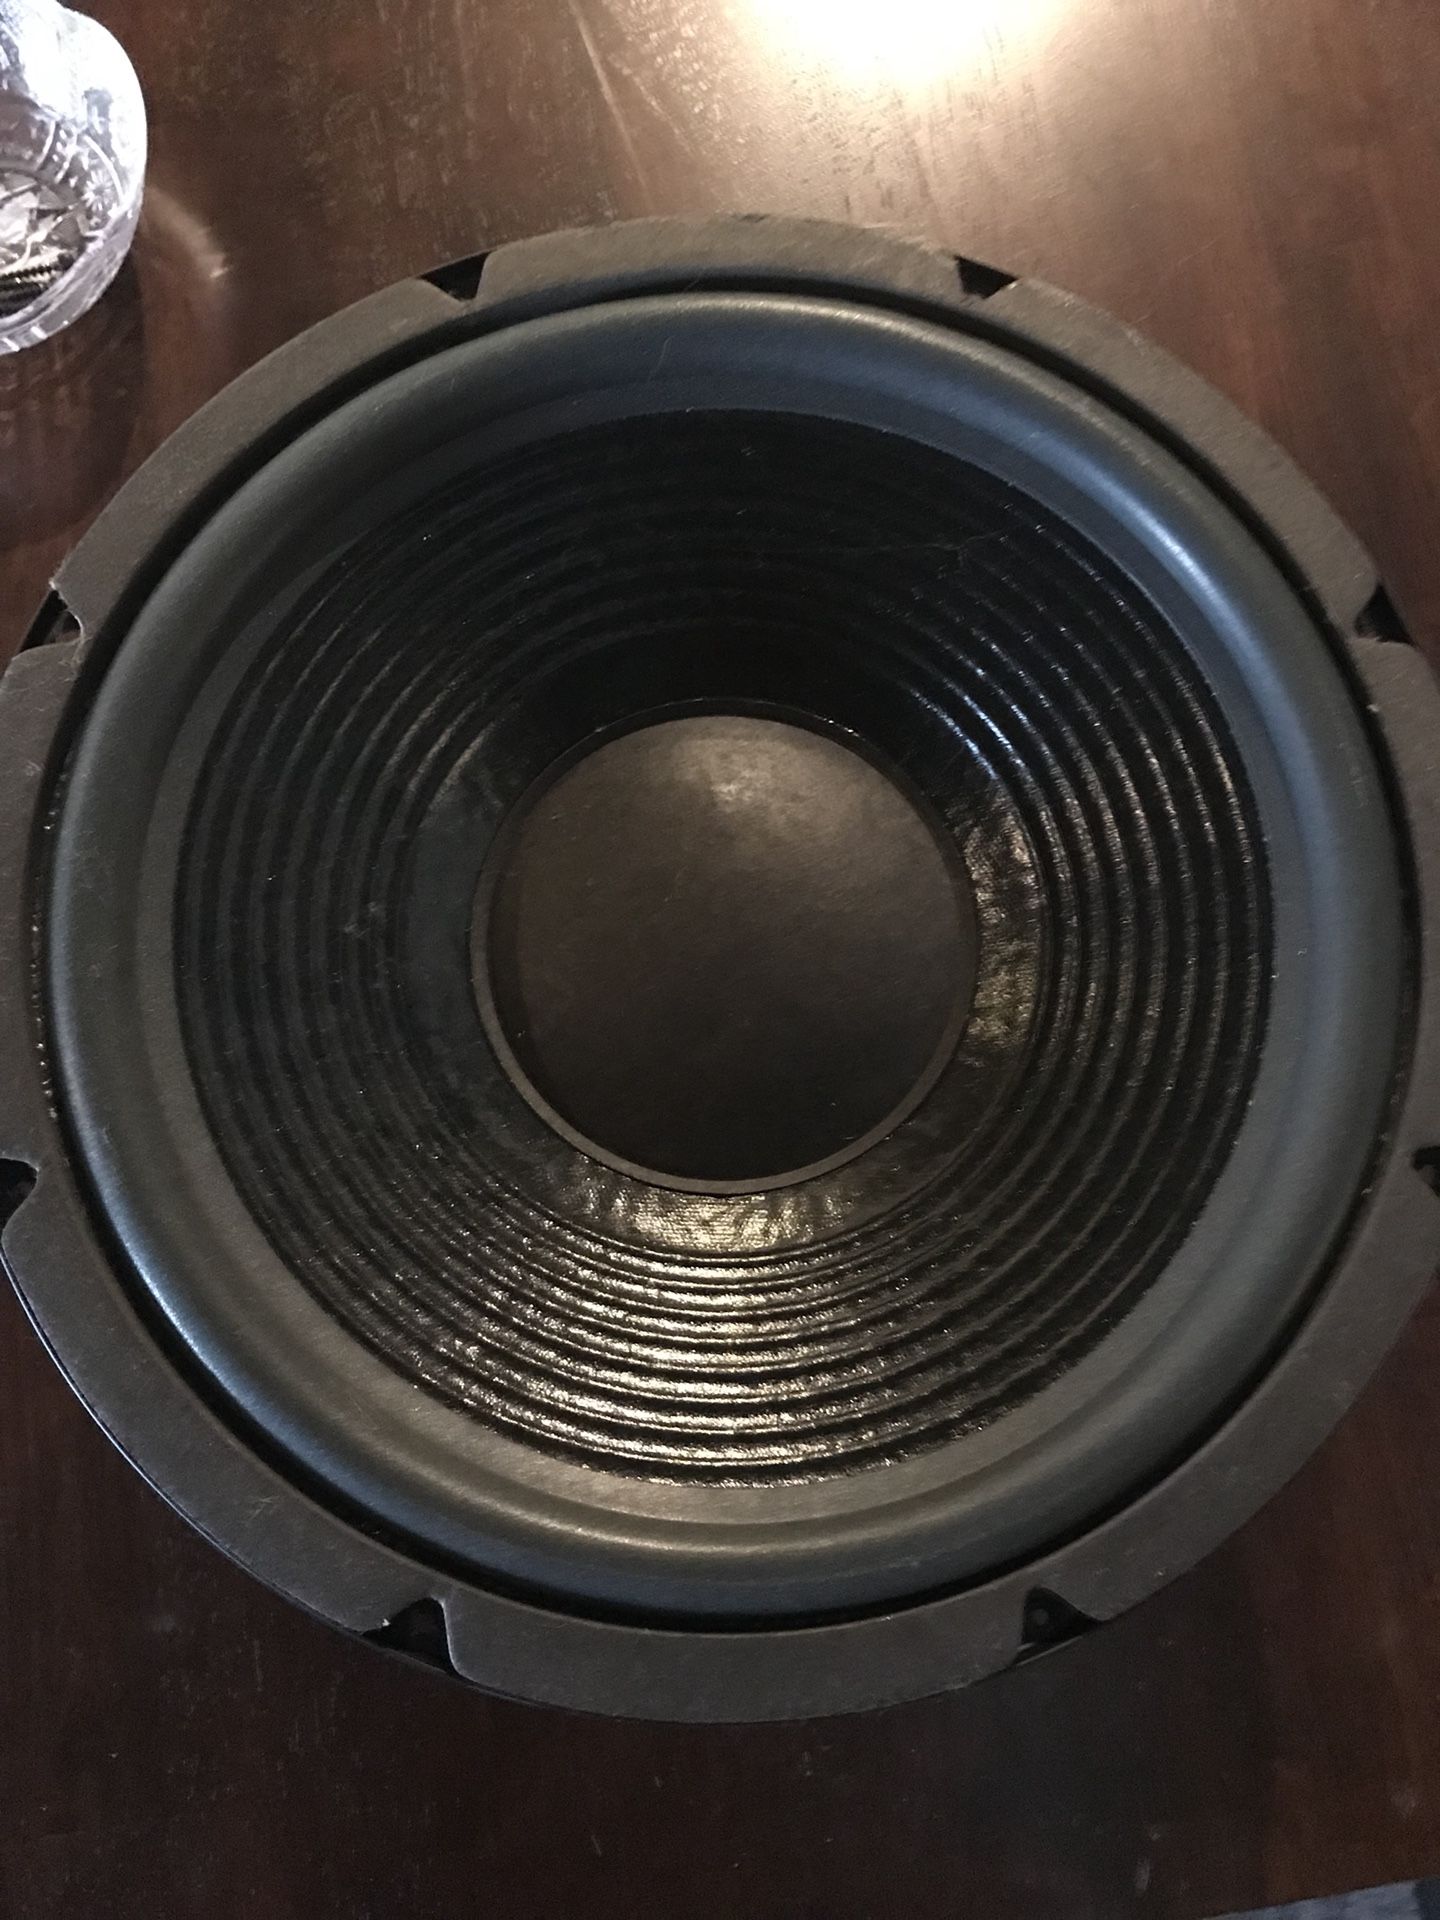 12” Klipsch sub woofer speaker